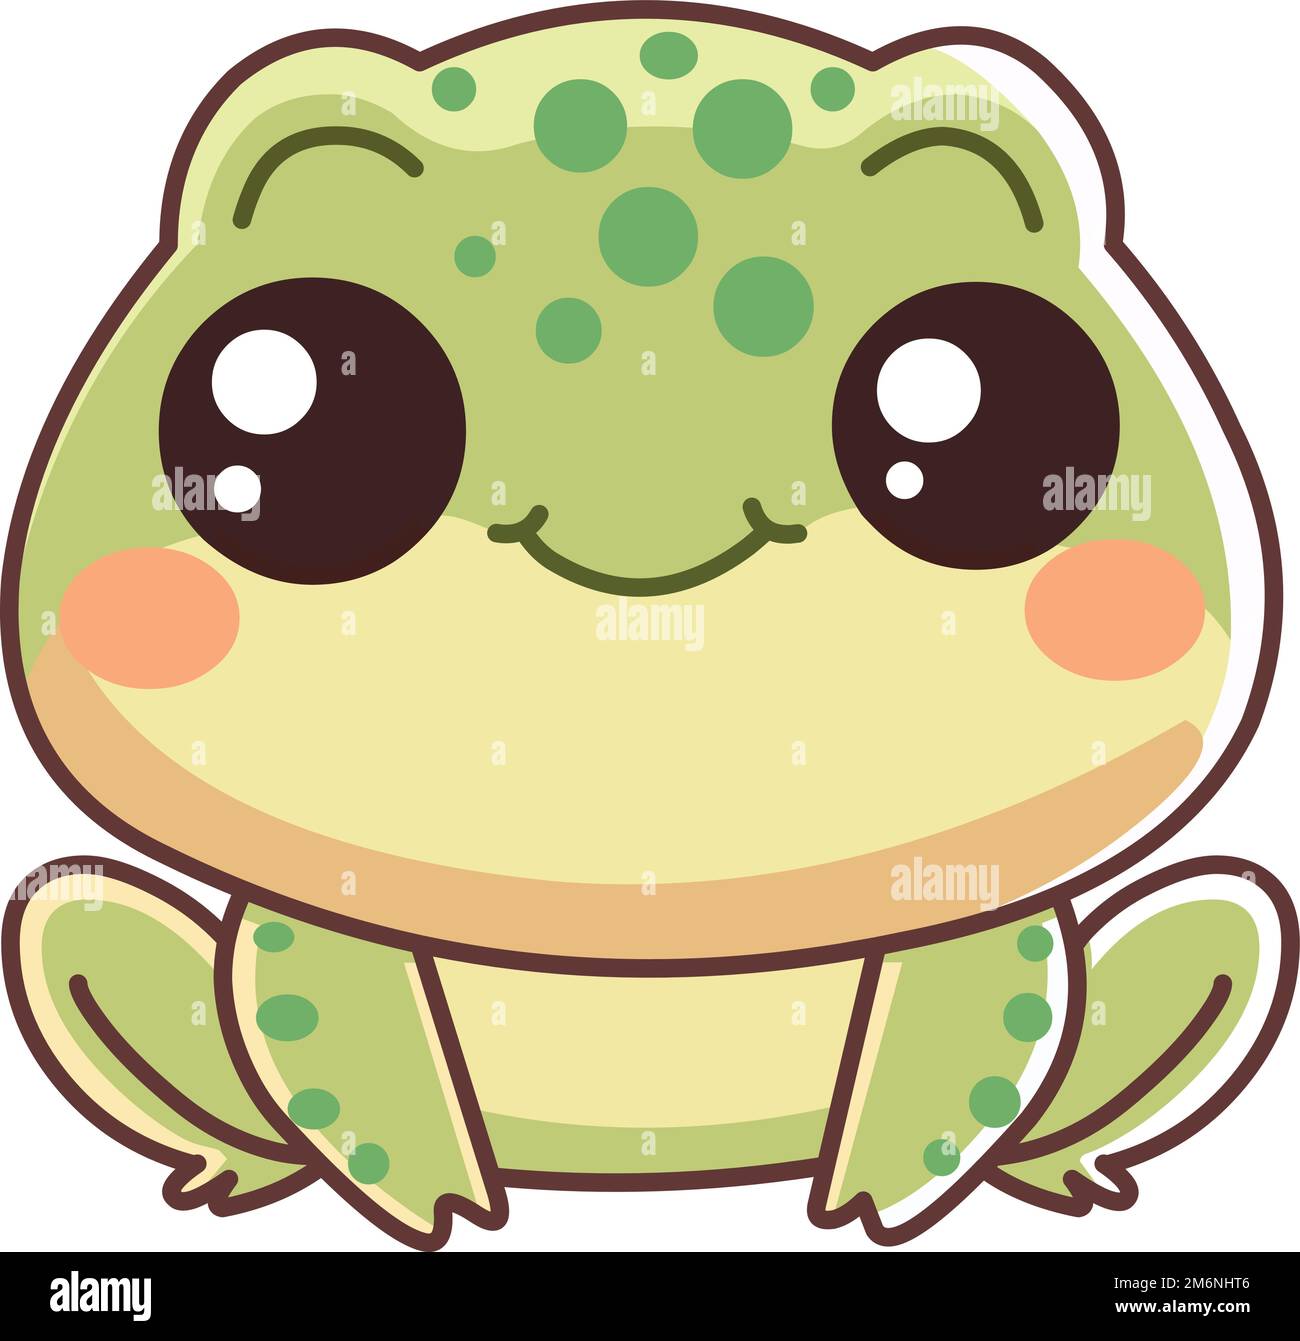 Bébé grenouille souriant dans un style kawaii Illustration de Vecteur